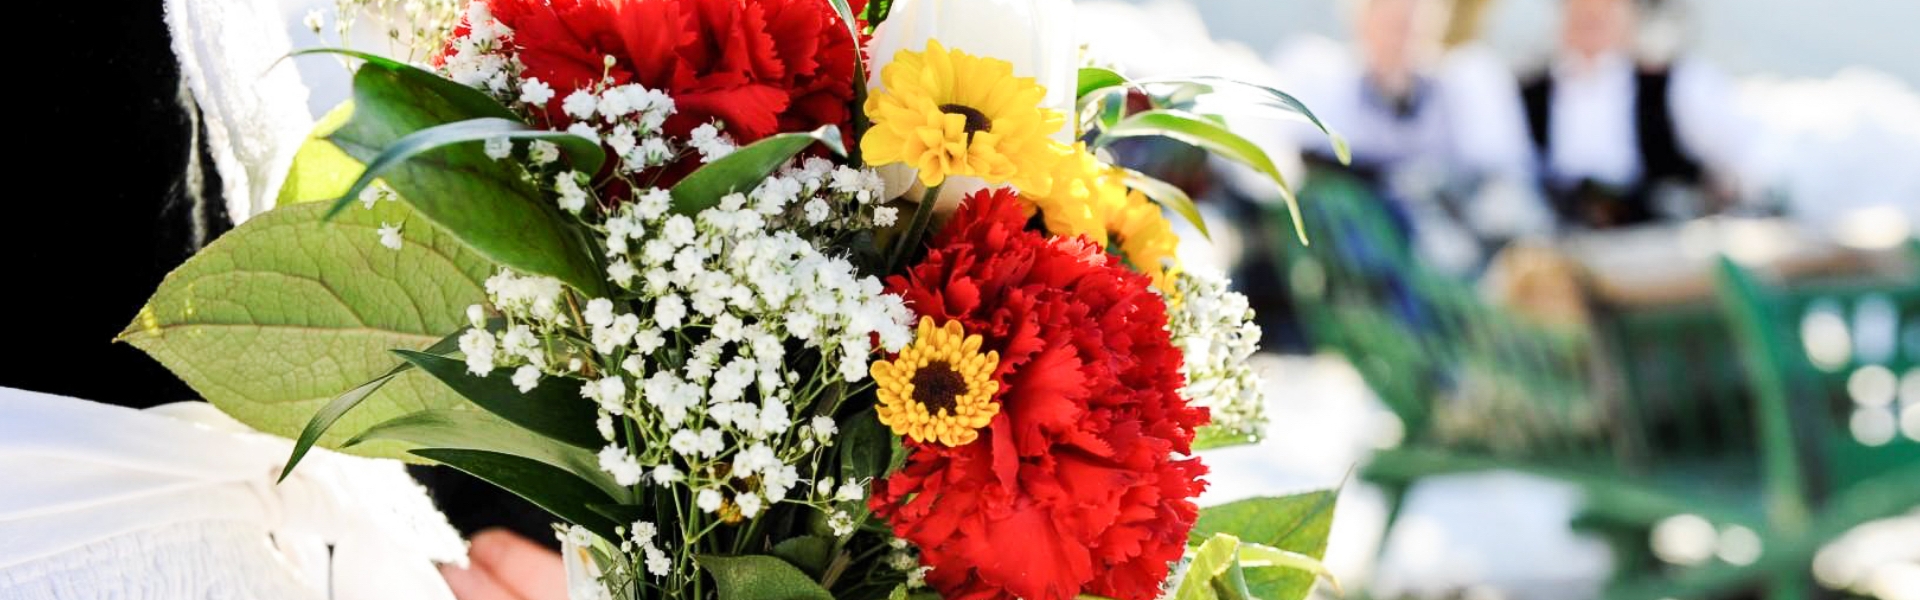 Blumenstrauß - Tradition in Kastelruth